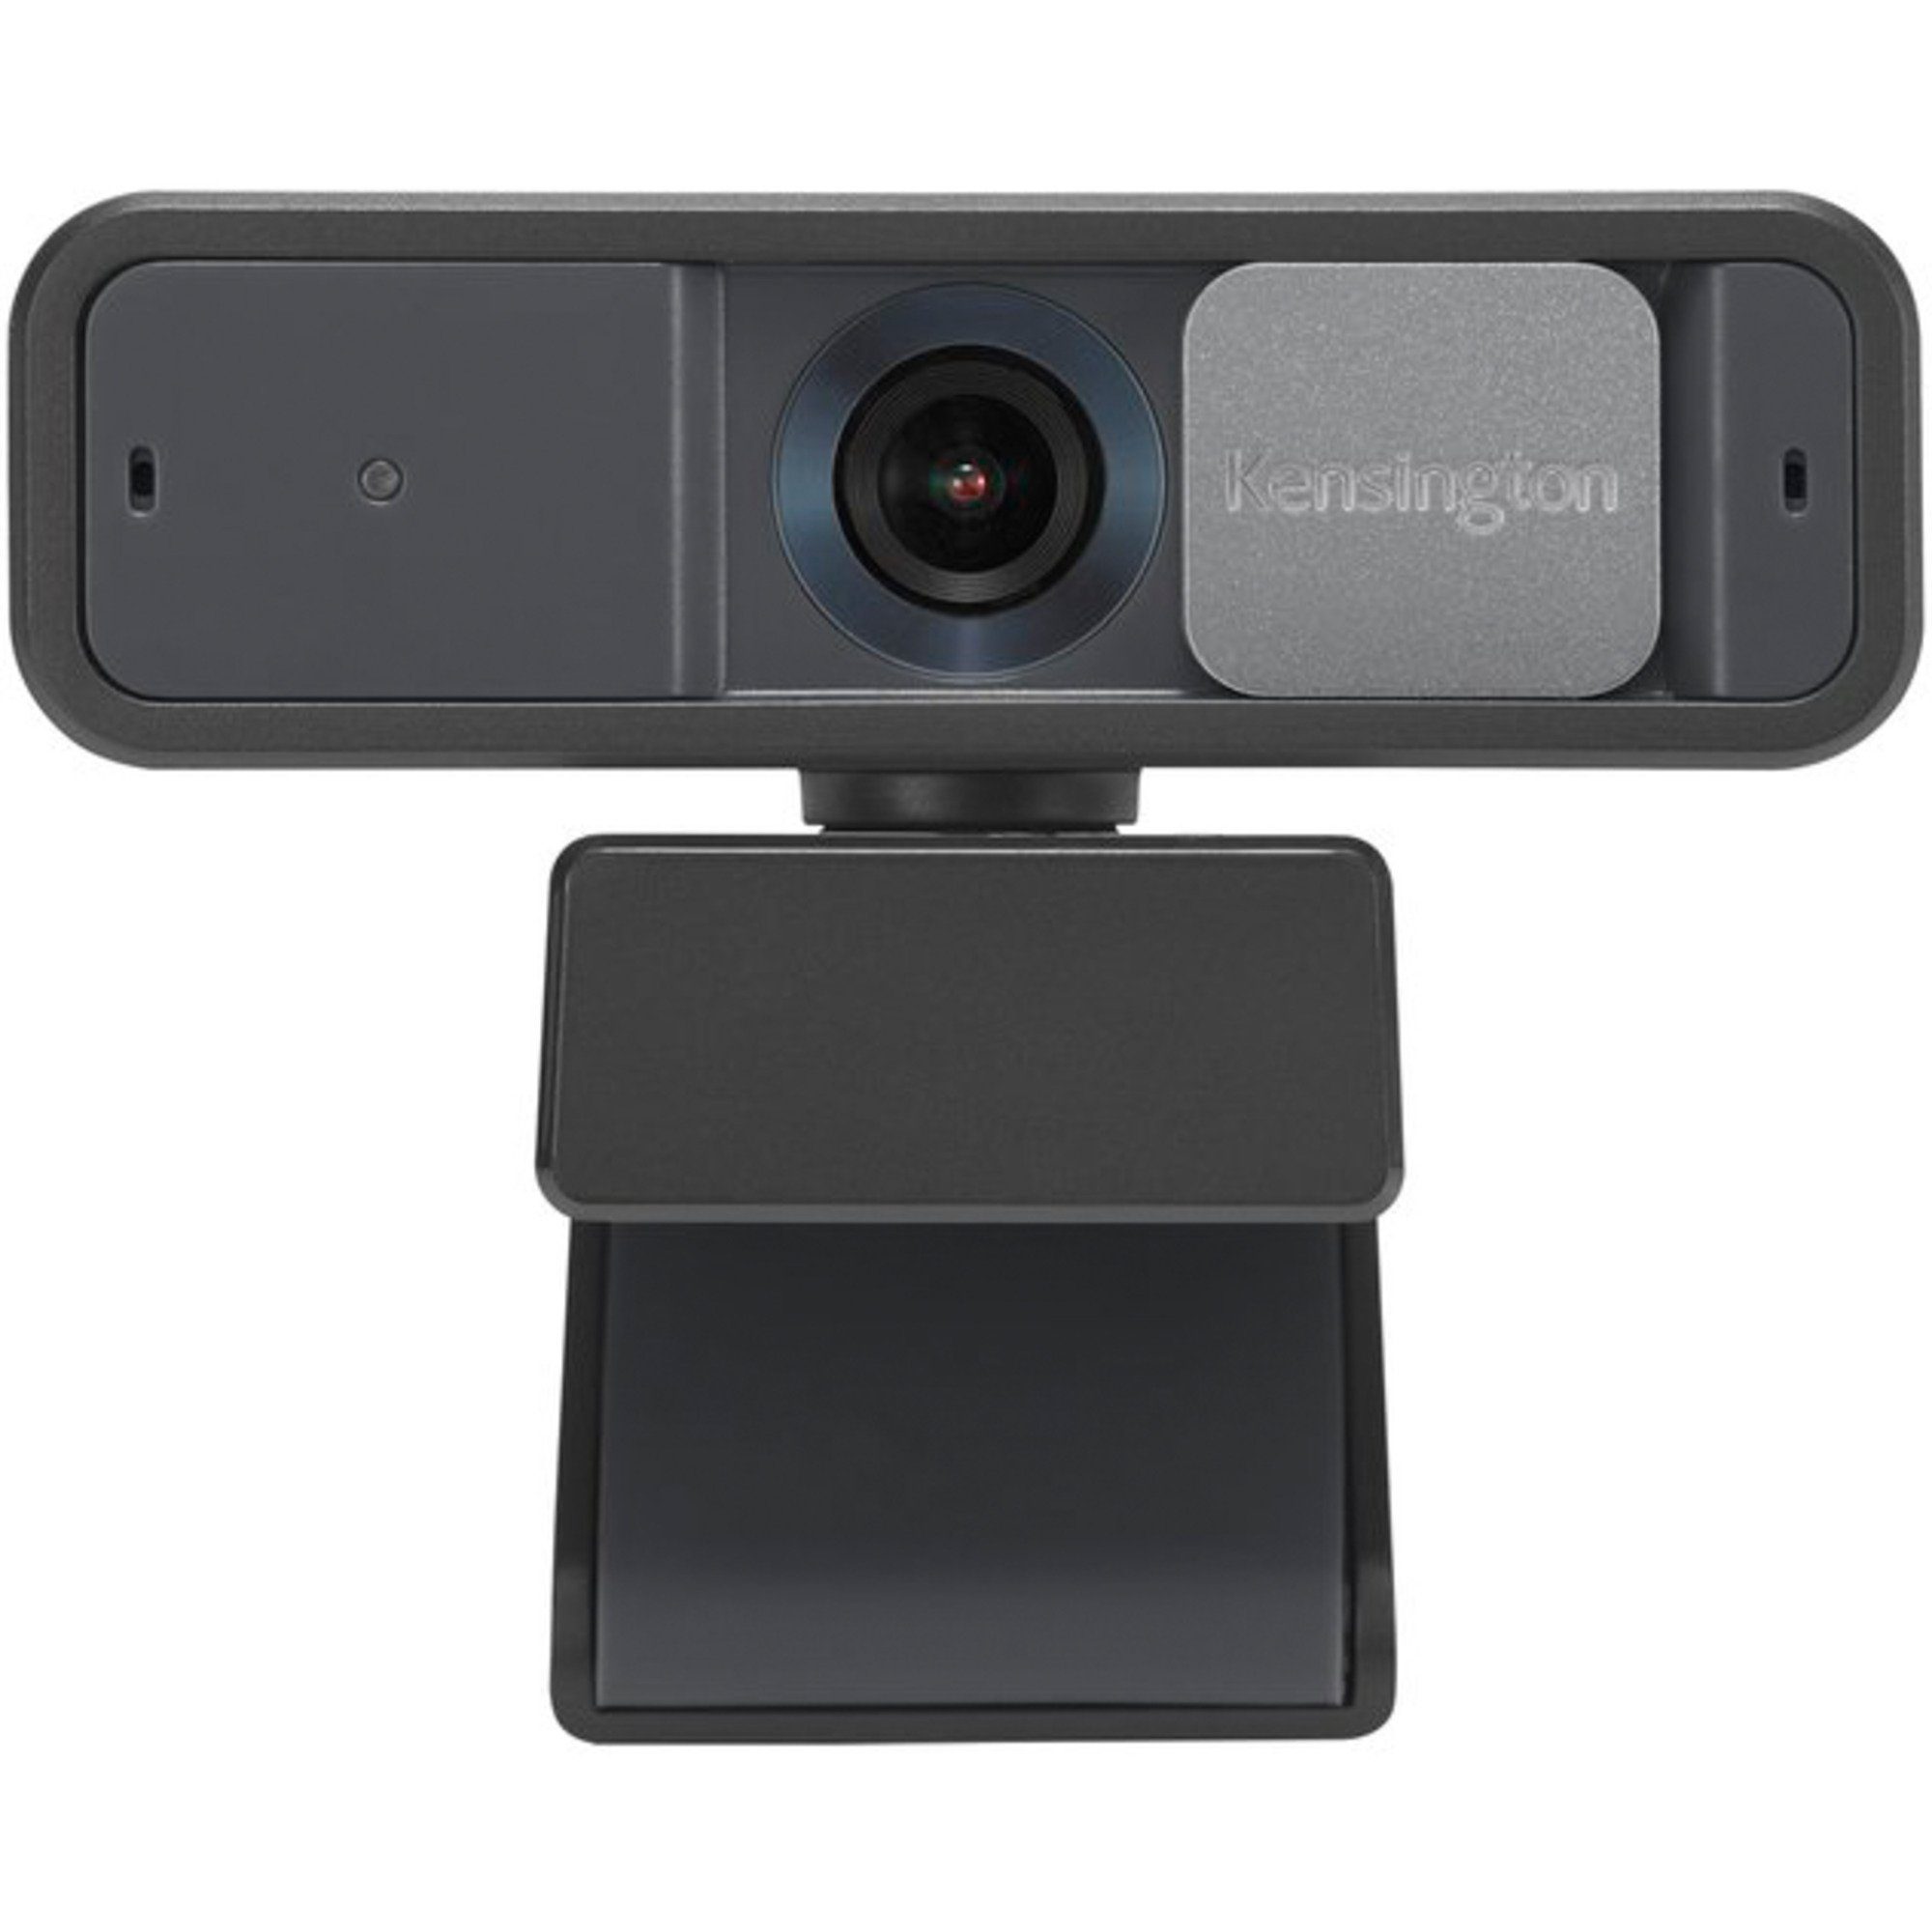 Auto Focus, Kensington 1080p Webcam KENSINGTON W2050 Pro Webcam